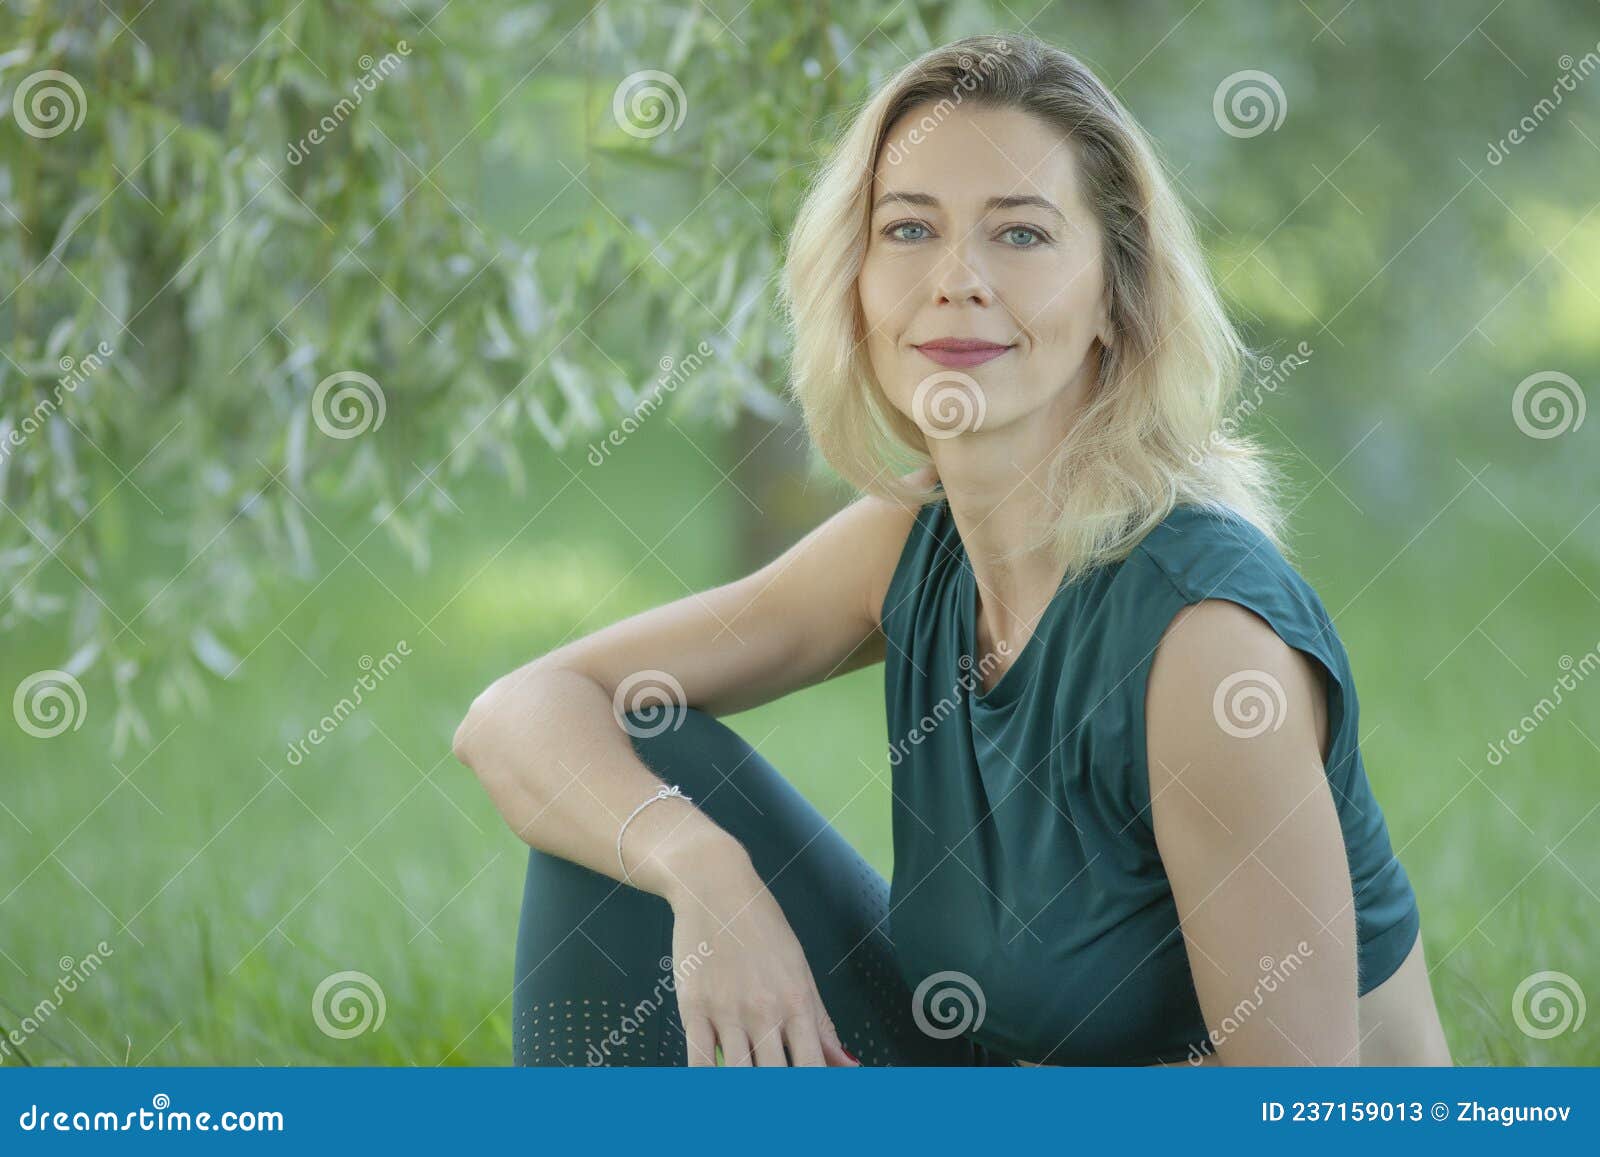 beautiful young woman relaxing outdoors